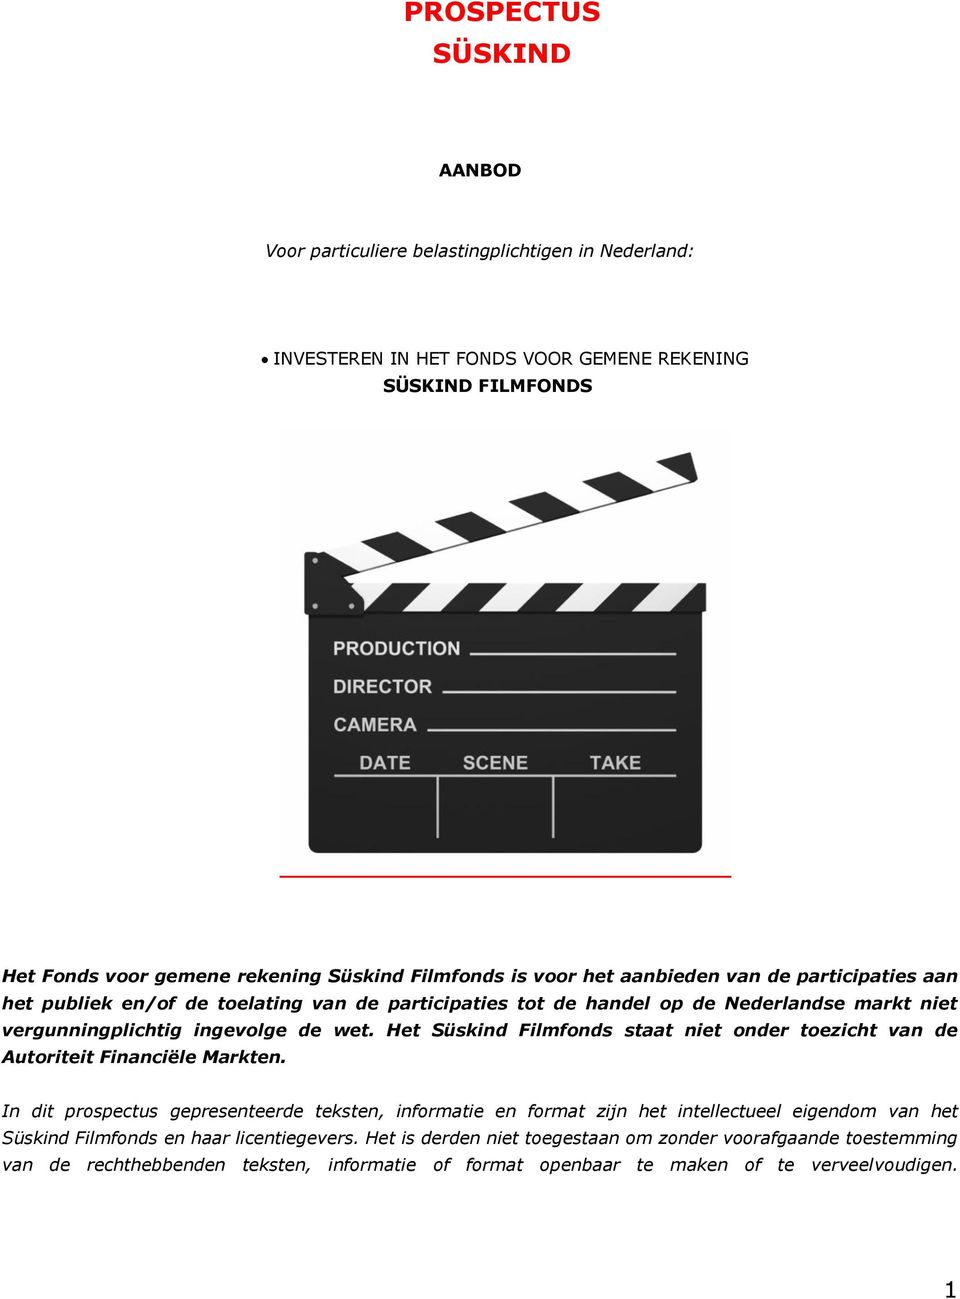 Het Süskind Filmfonds staat niet onder toezicht van de Autoriteit Financiële Markten.